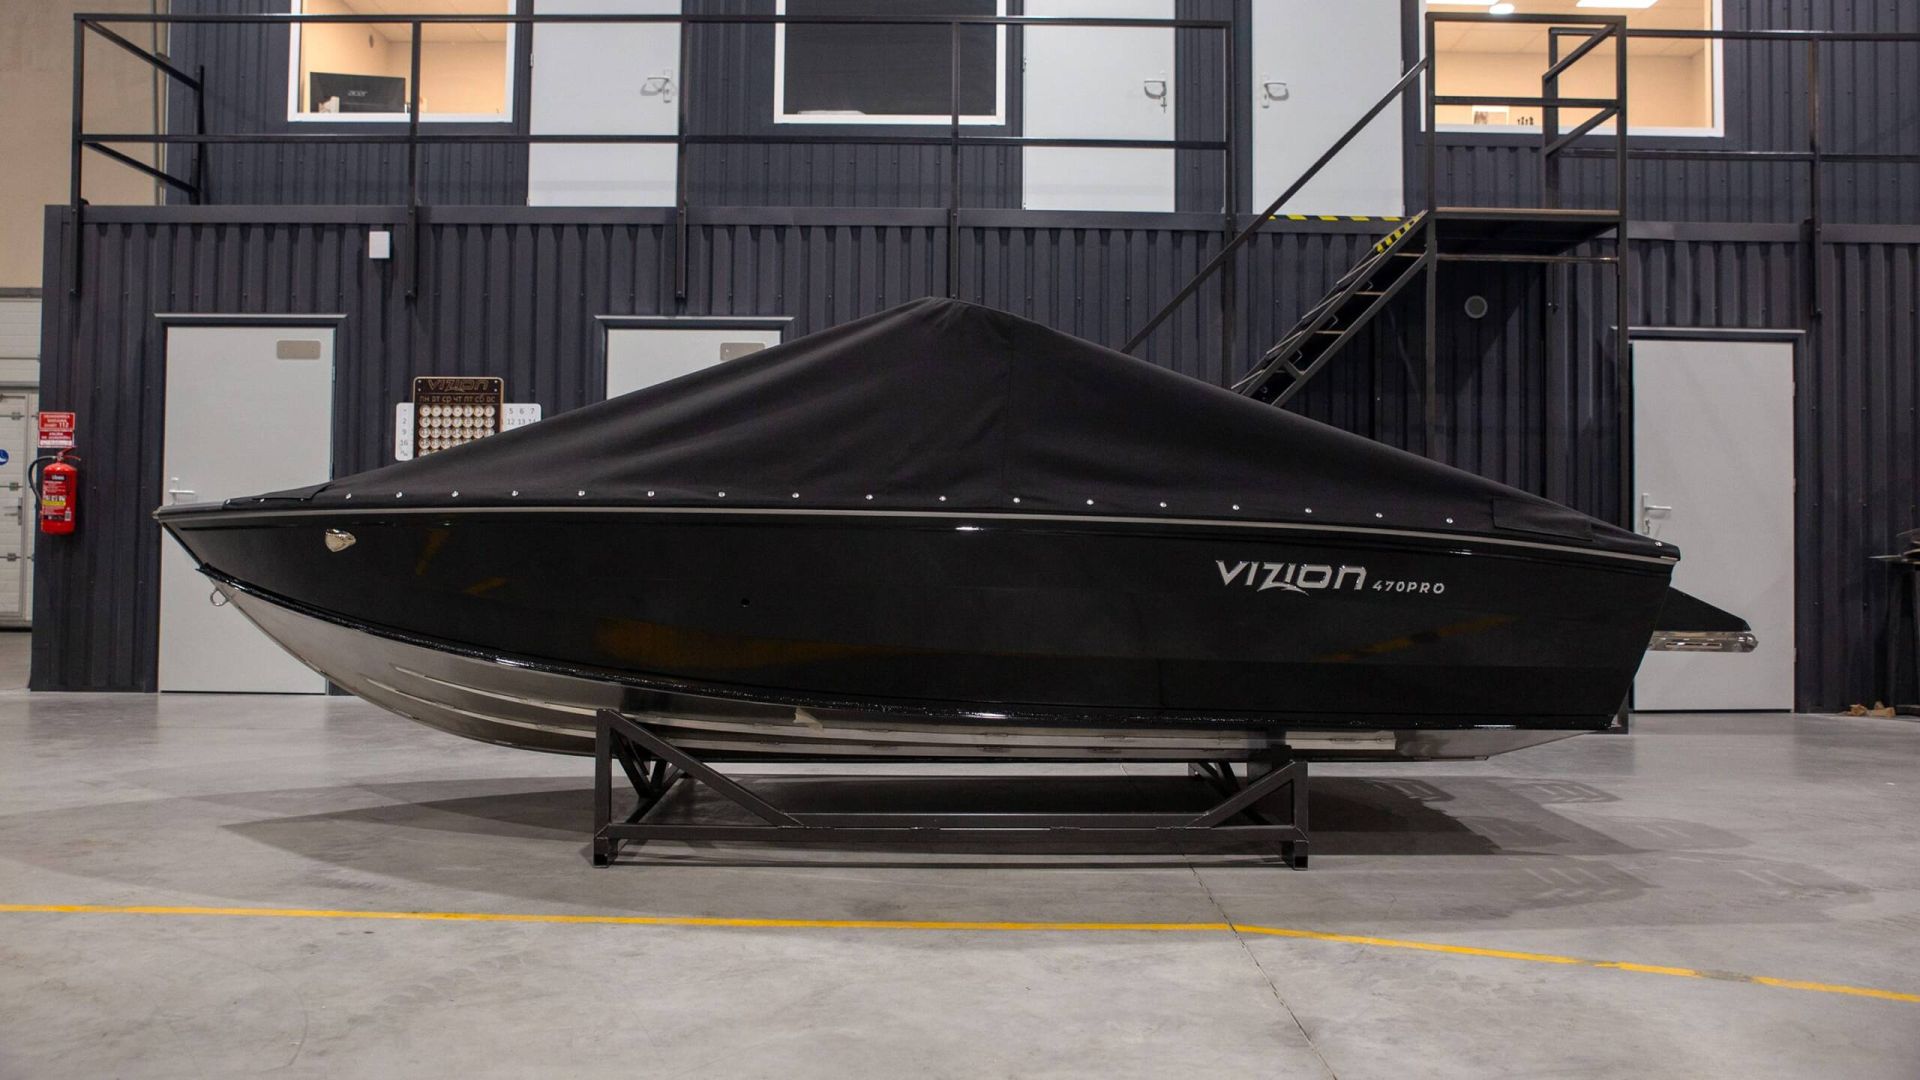 Boat VIZION 470 pro